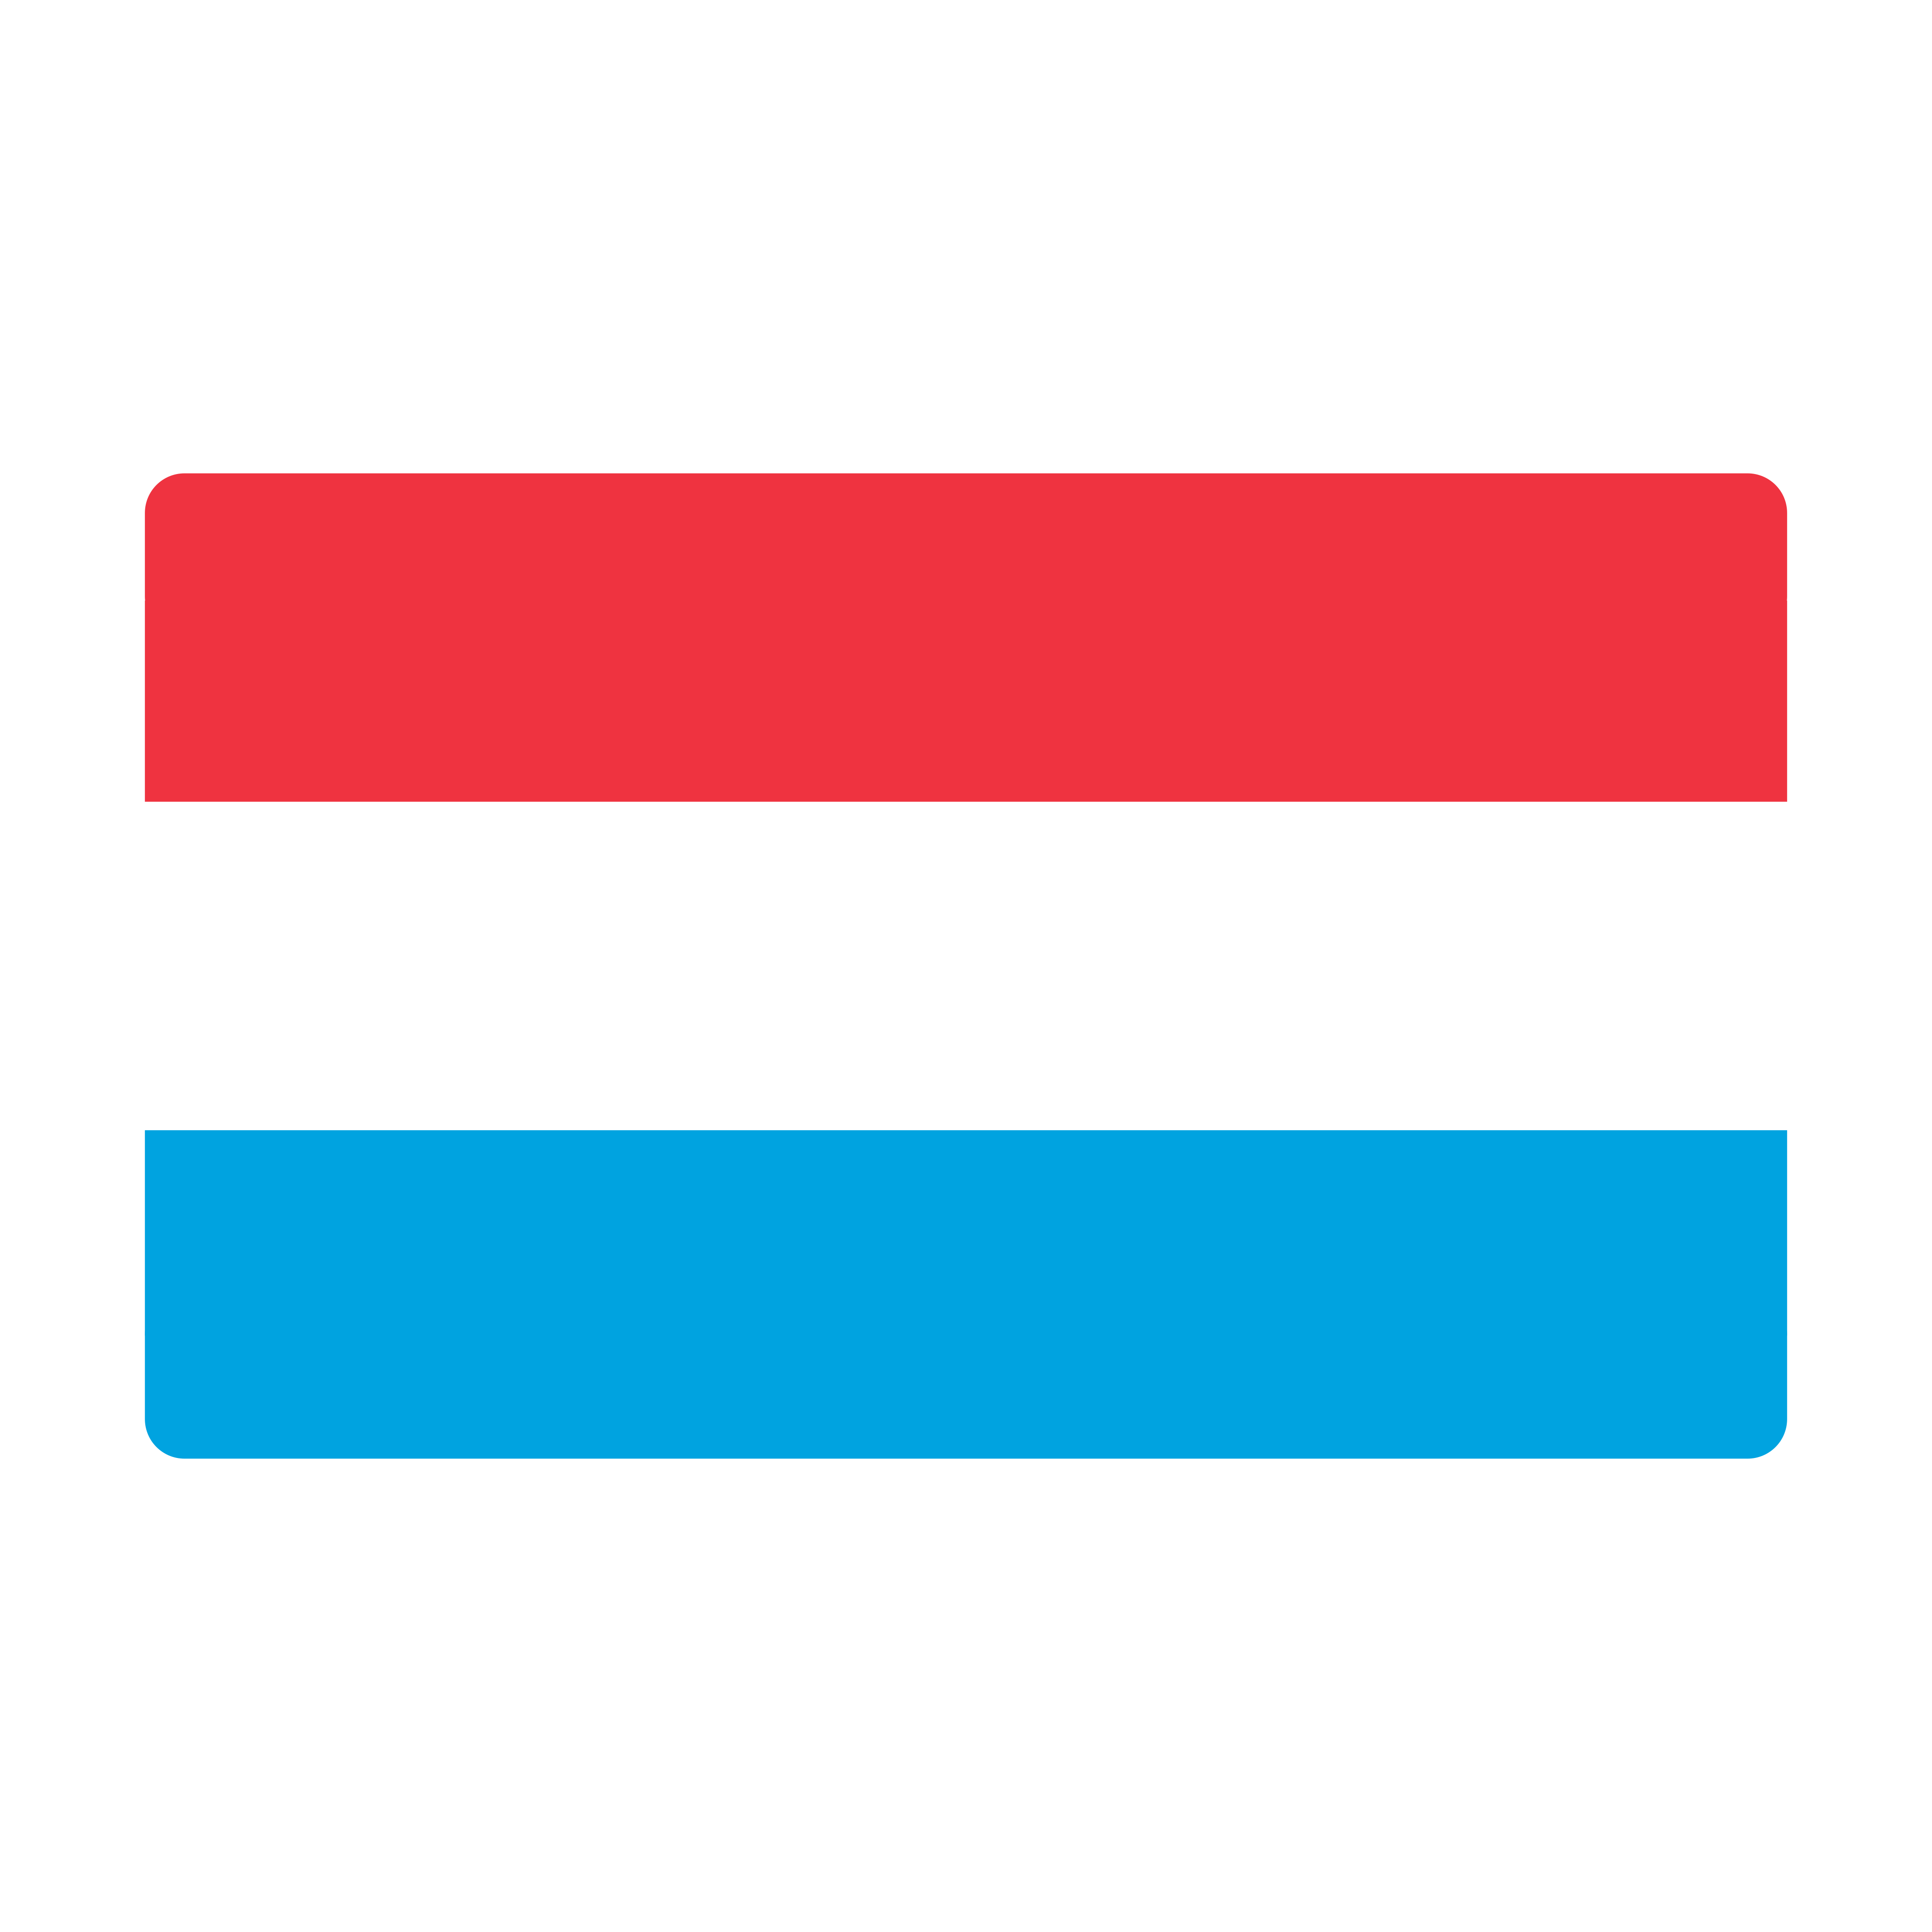 Bandera de Luxemburgo en formato PNG.